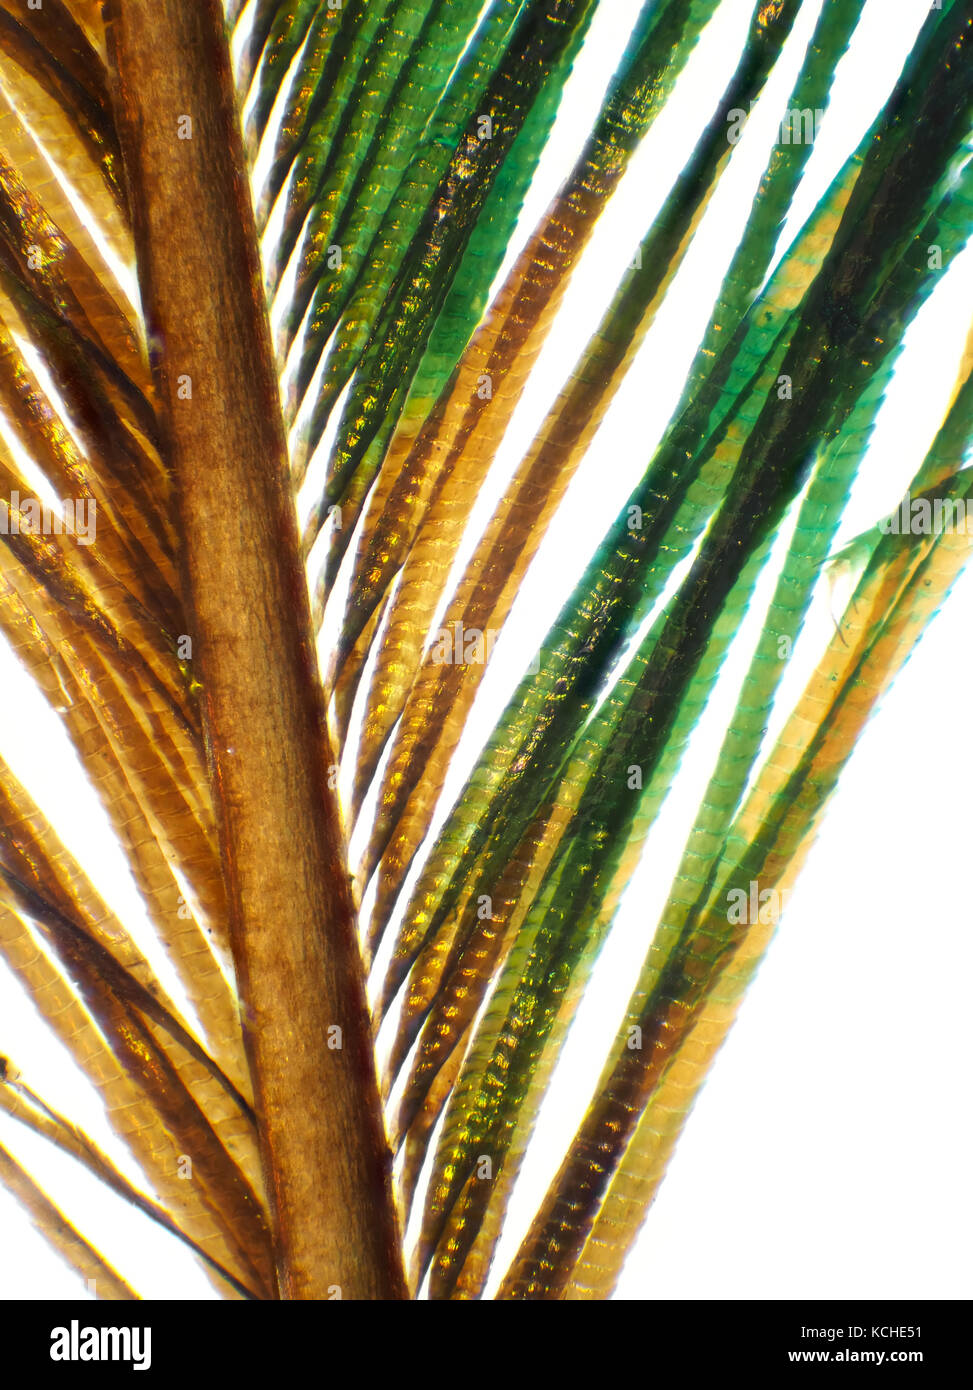 Micrografía brillante campo de plumas de pavo real, foto de superficie es de unos 1,7 mm de altura Foto de stock